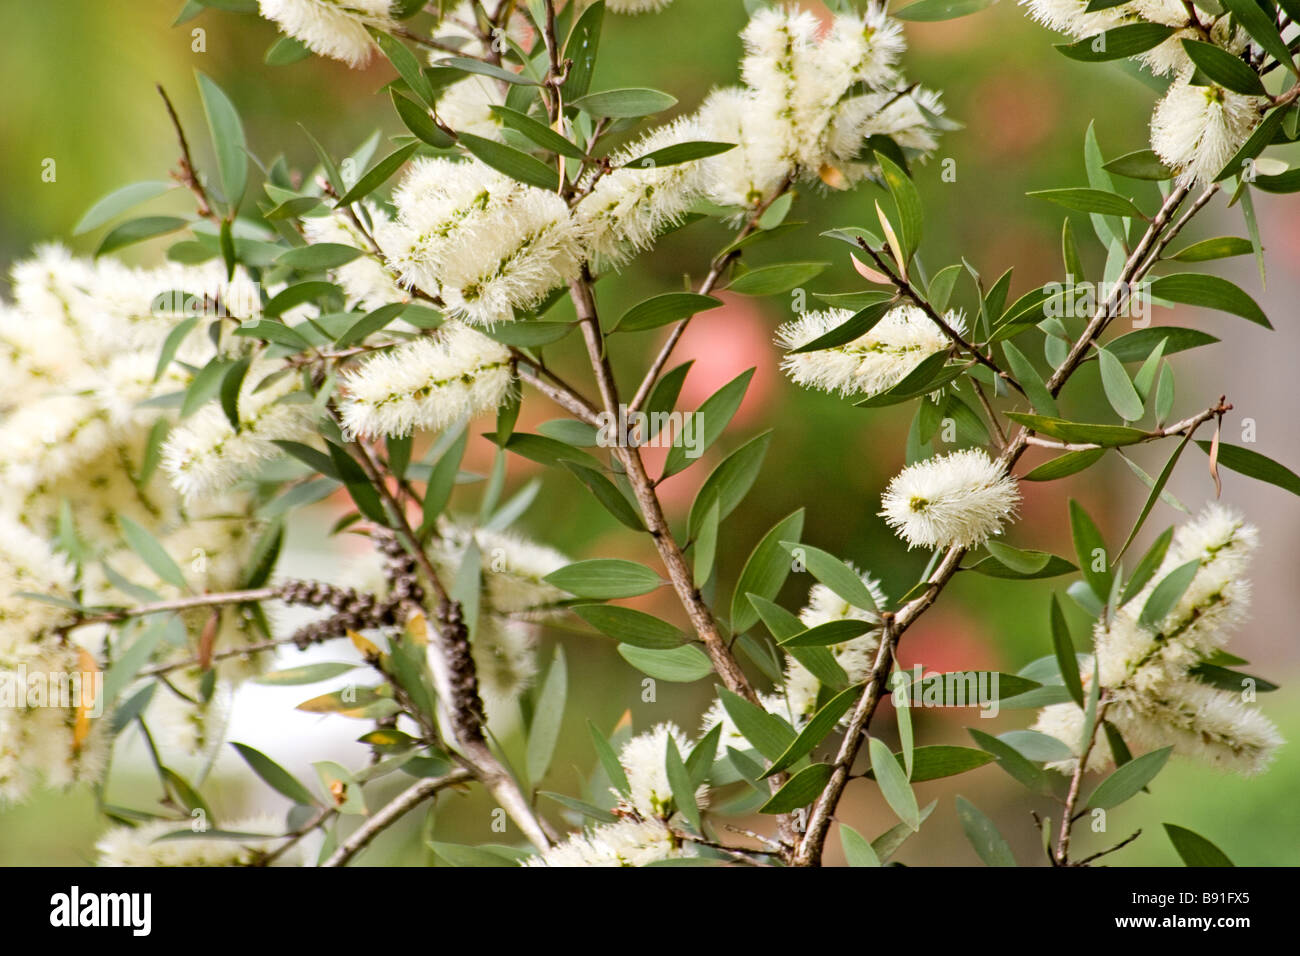 Melaleuca in bloom Stock Photo